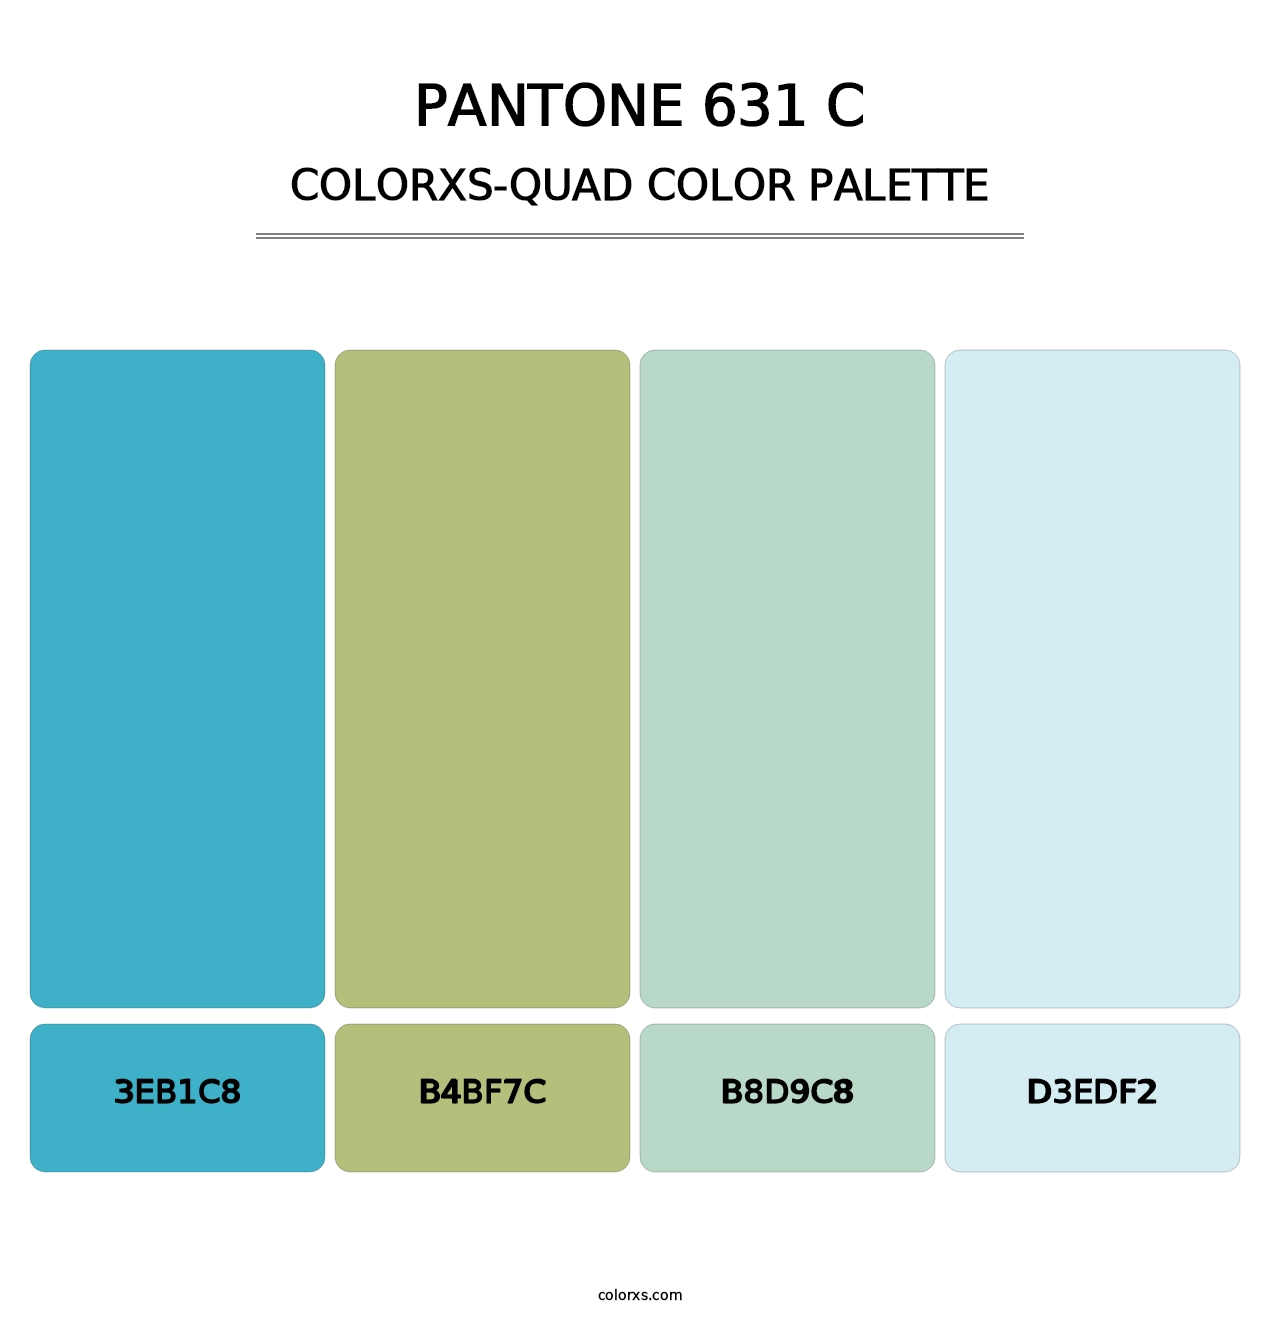 PANTONE 631 C - Colorxs Quad Palette